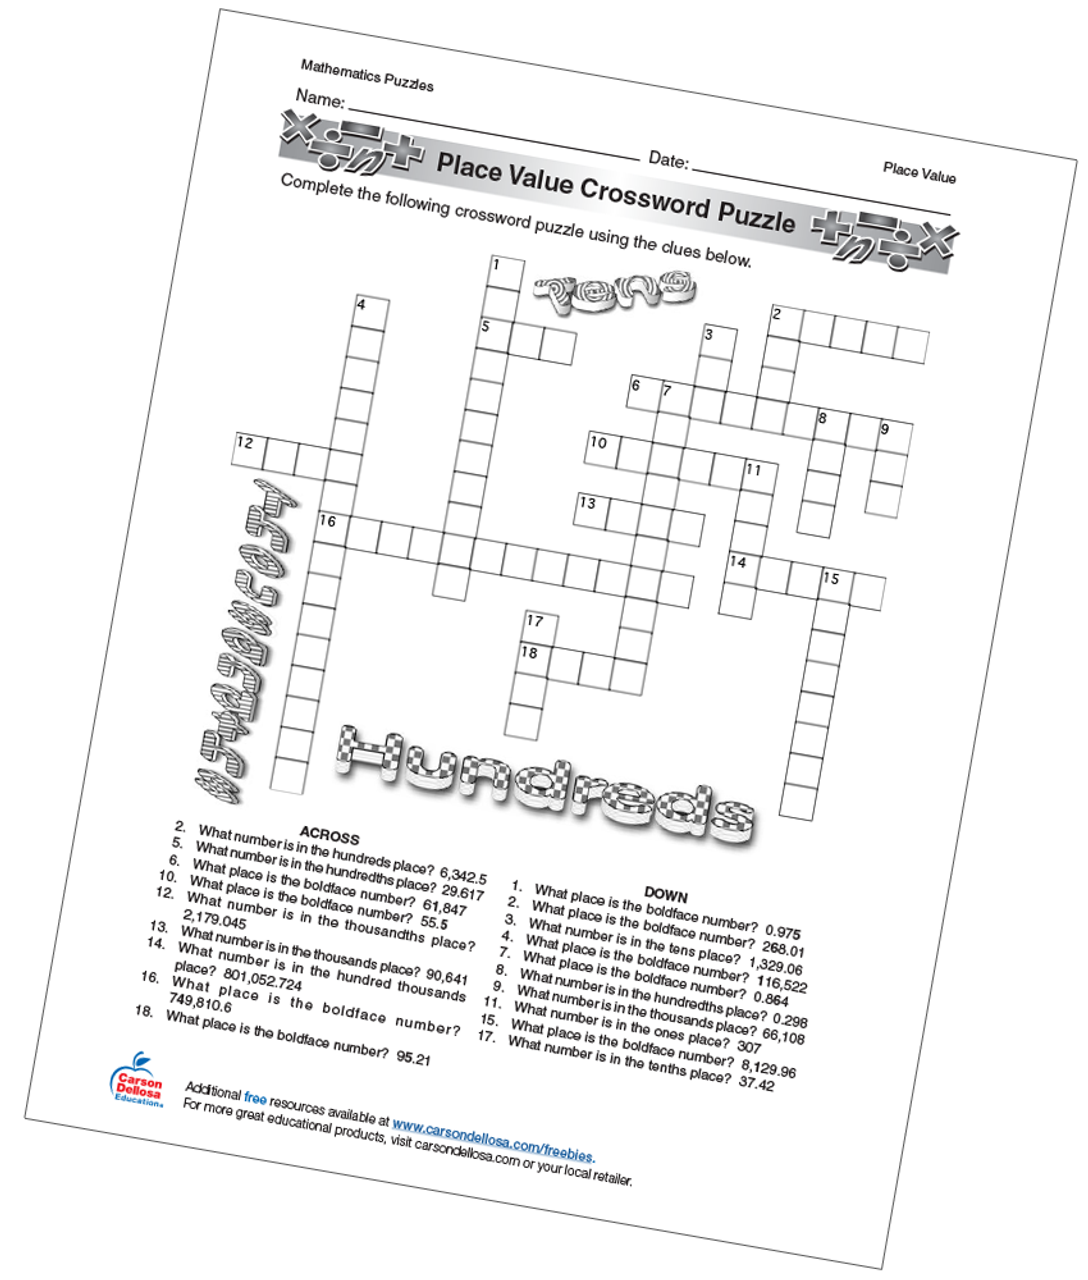 Place Value Crossword Puzzle Free Printable Carson Dellosa Education